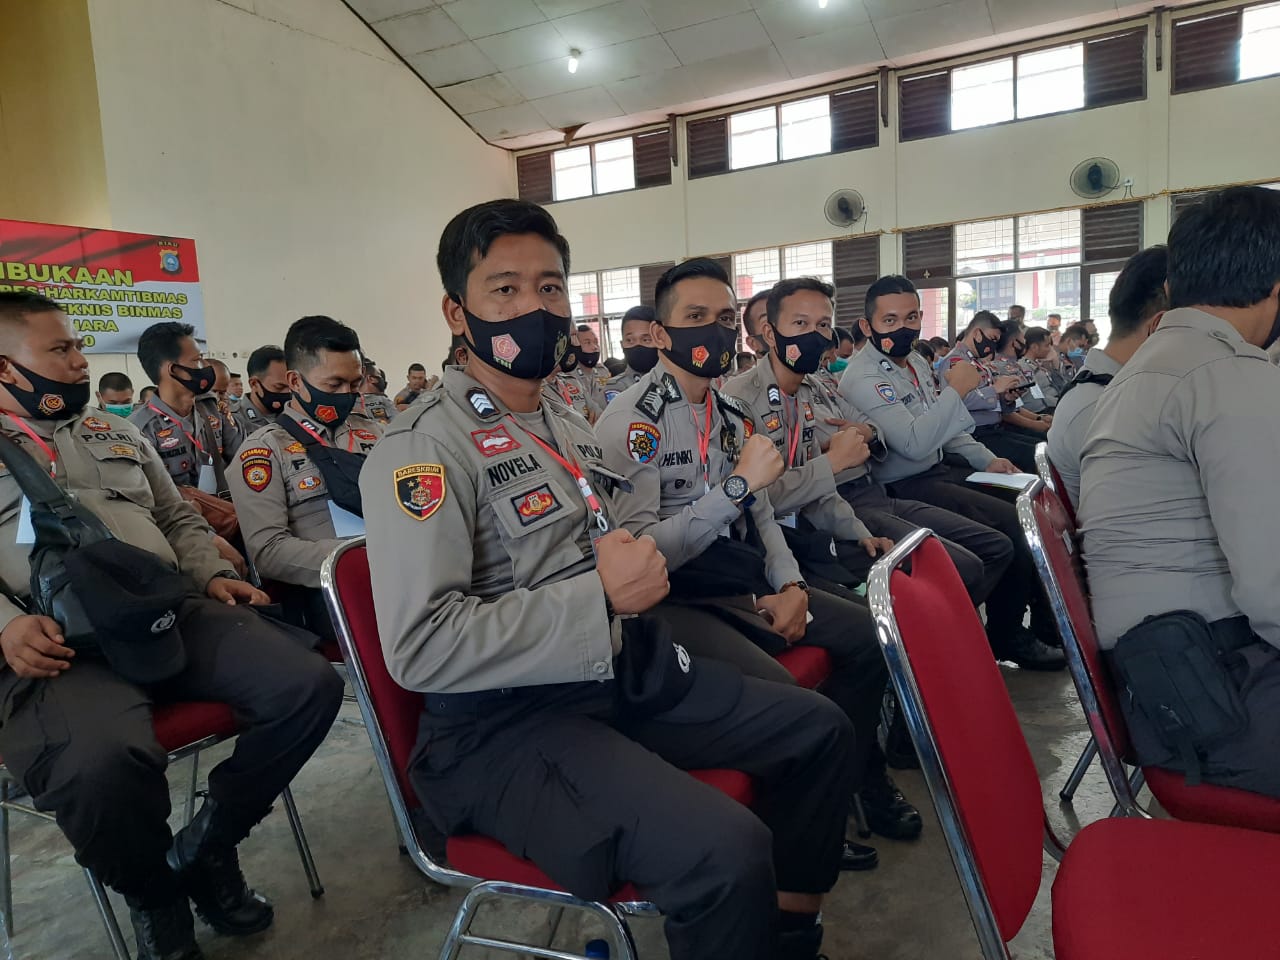 20 Personel Polres Kuansing, Ikuti Pelatihan Walpri Komisioner Dan Calon Bupati/wakil Bupati